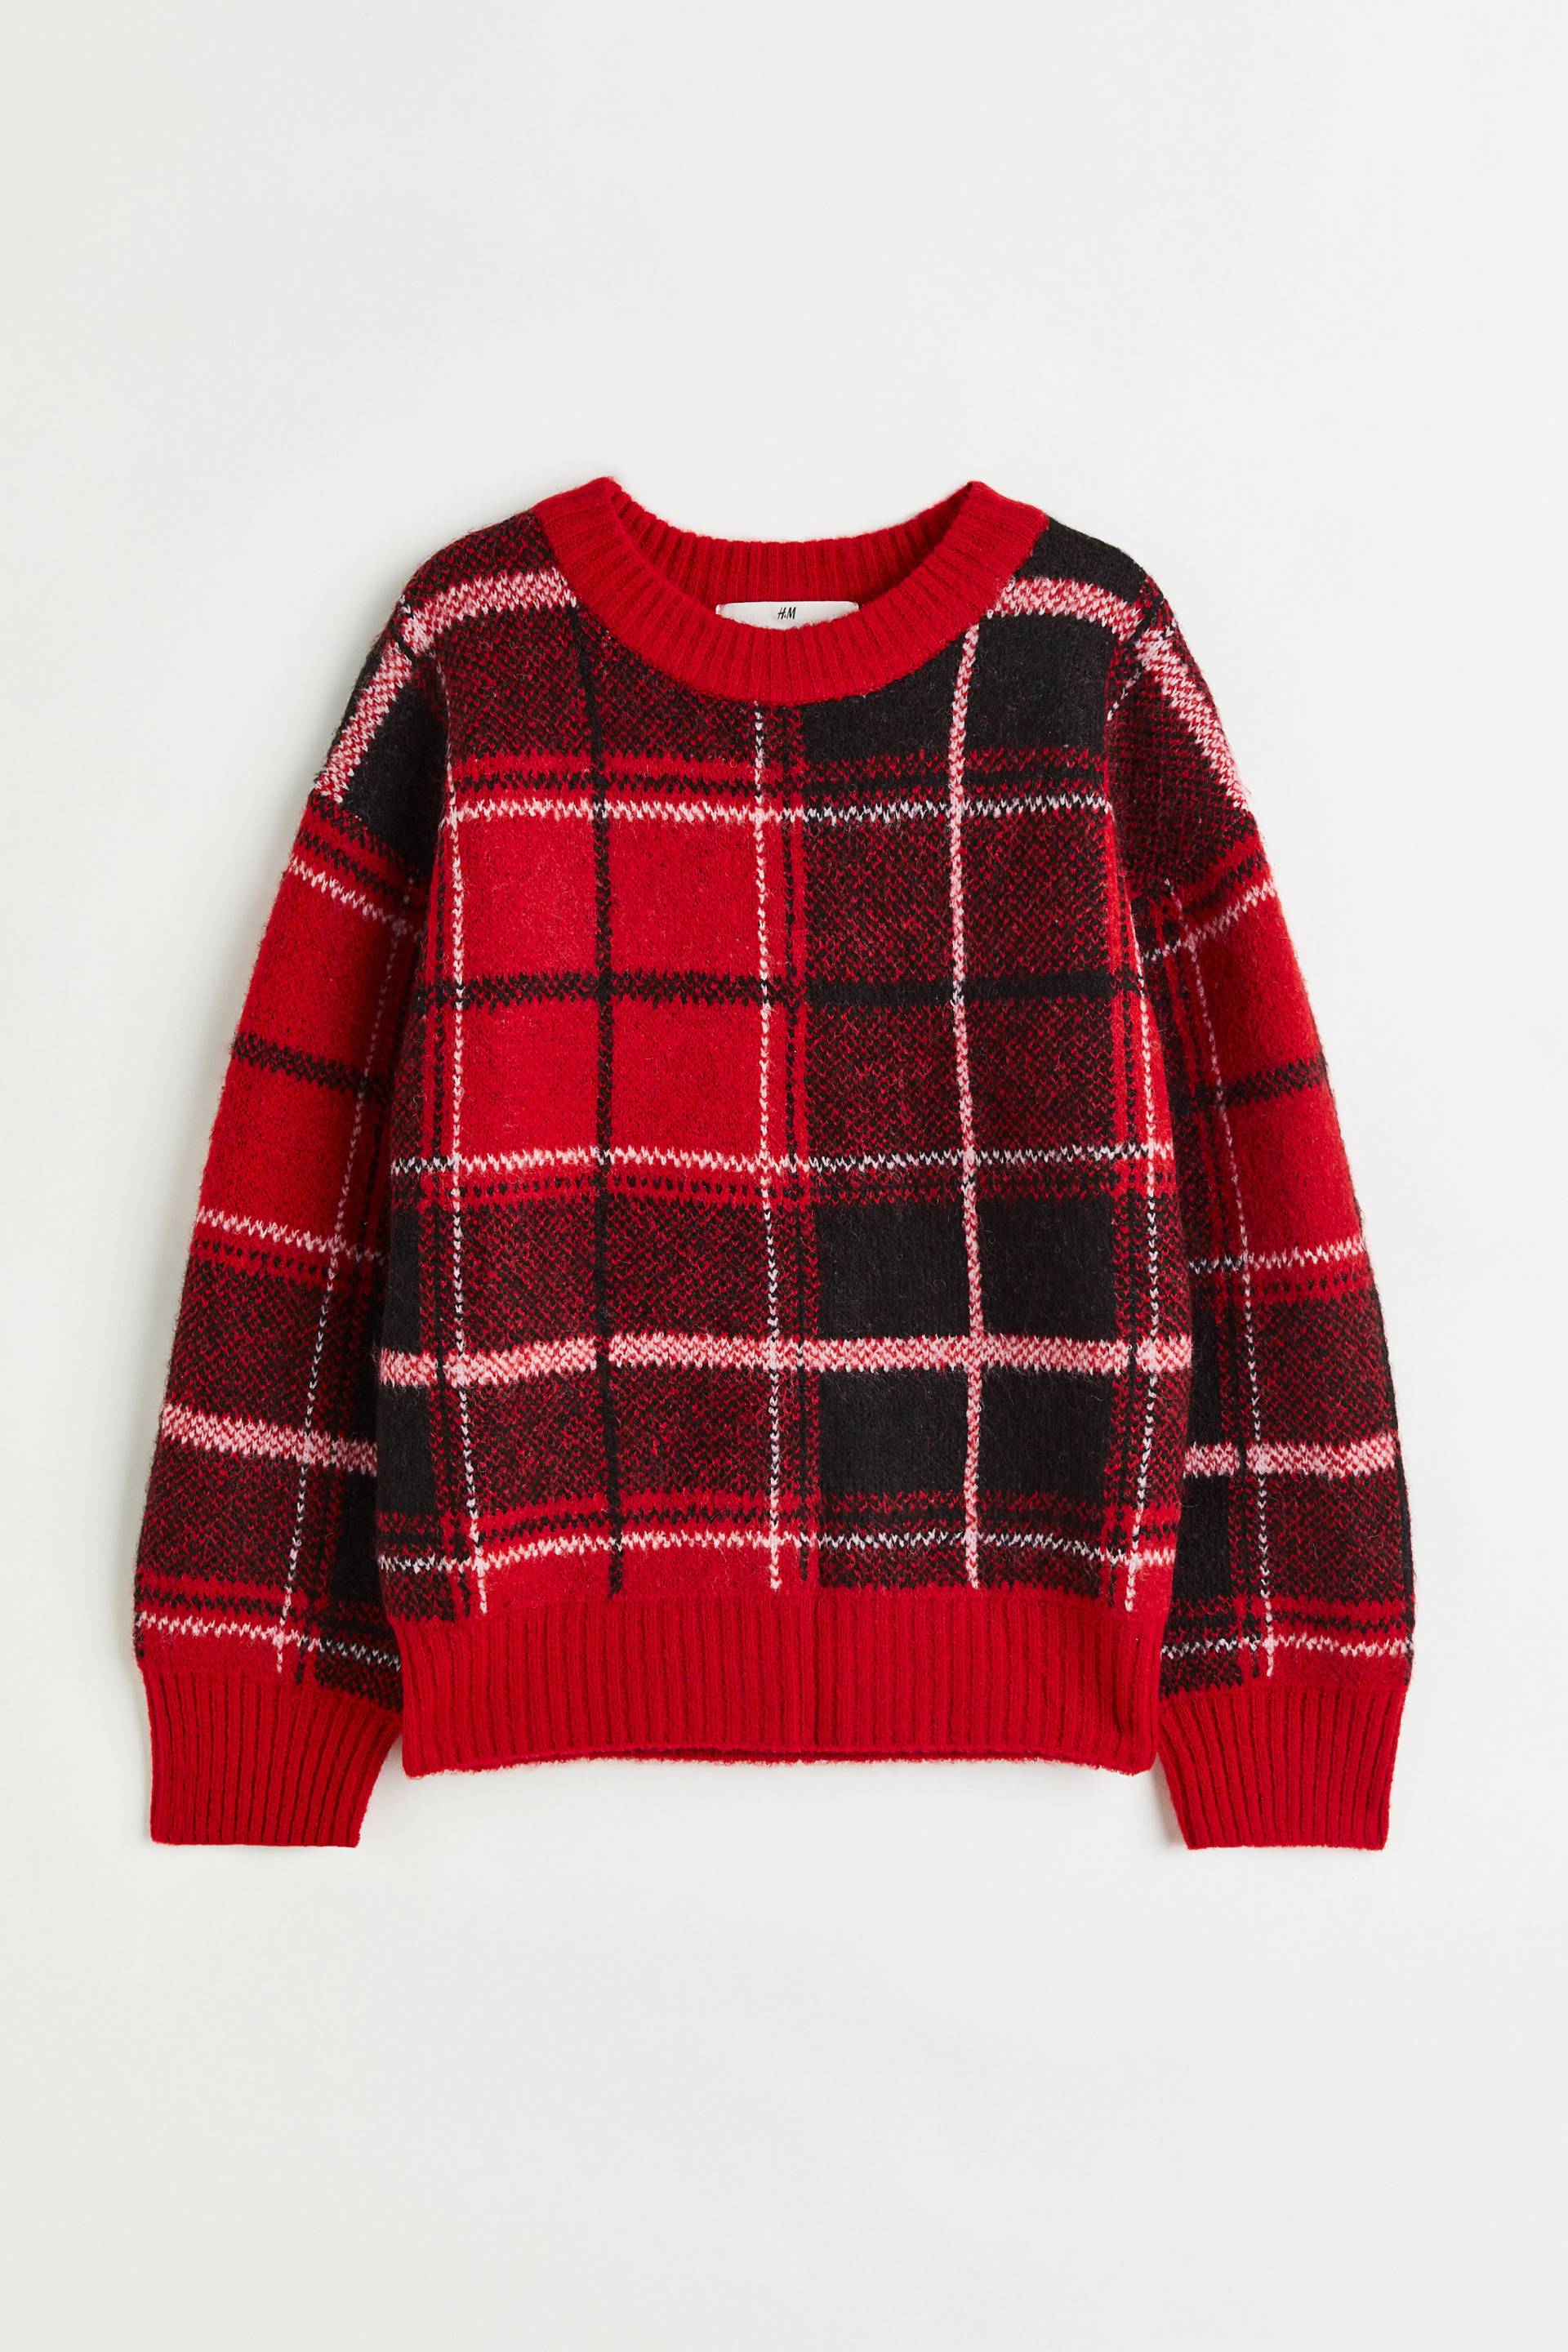 H&M Jacquard-Pullover Rot/Schwarz kariert in Größe 134/140. Farbe: Red/black checked von H&M